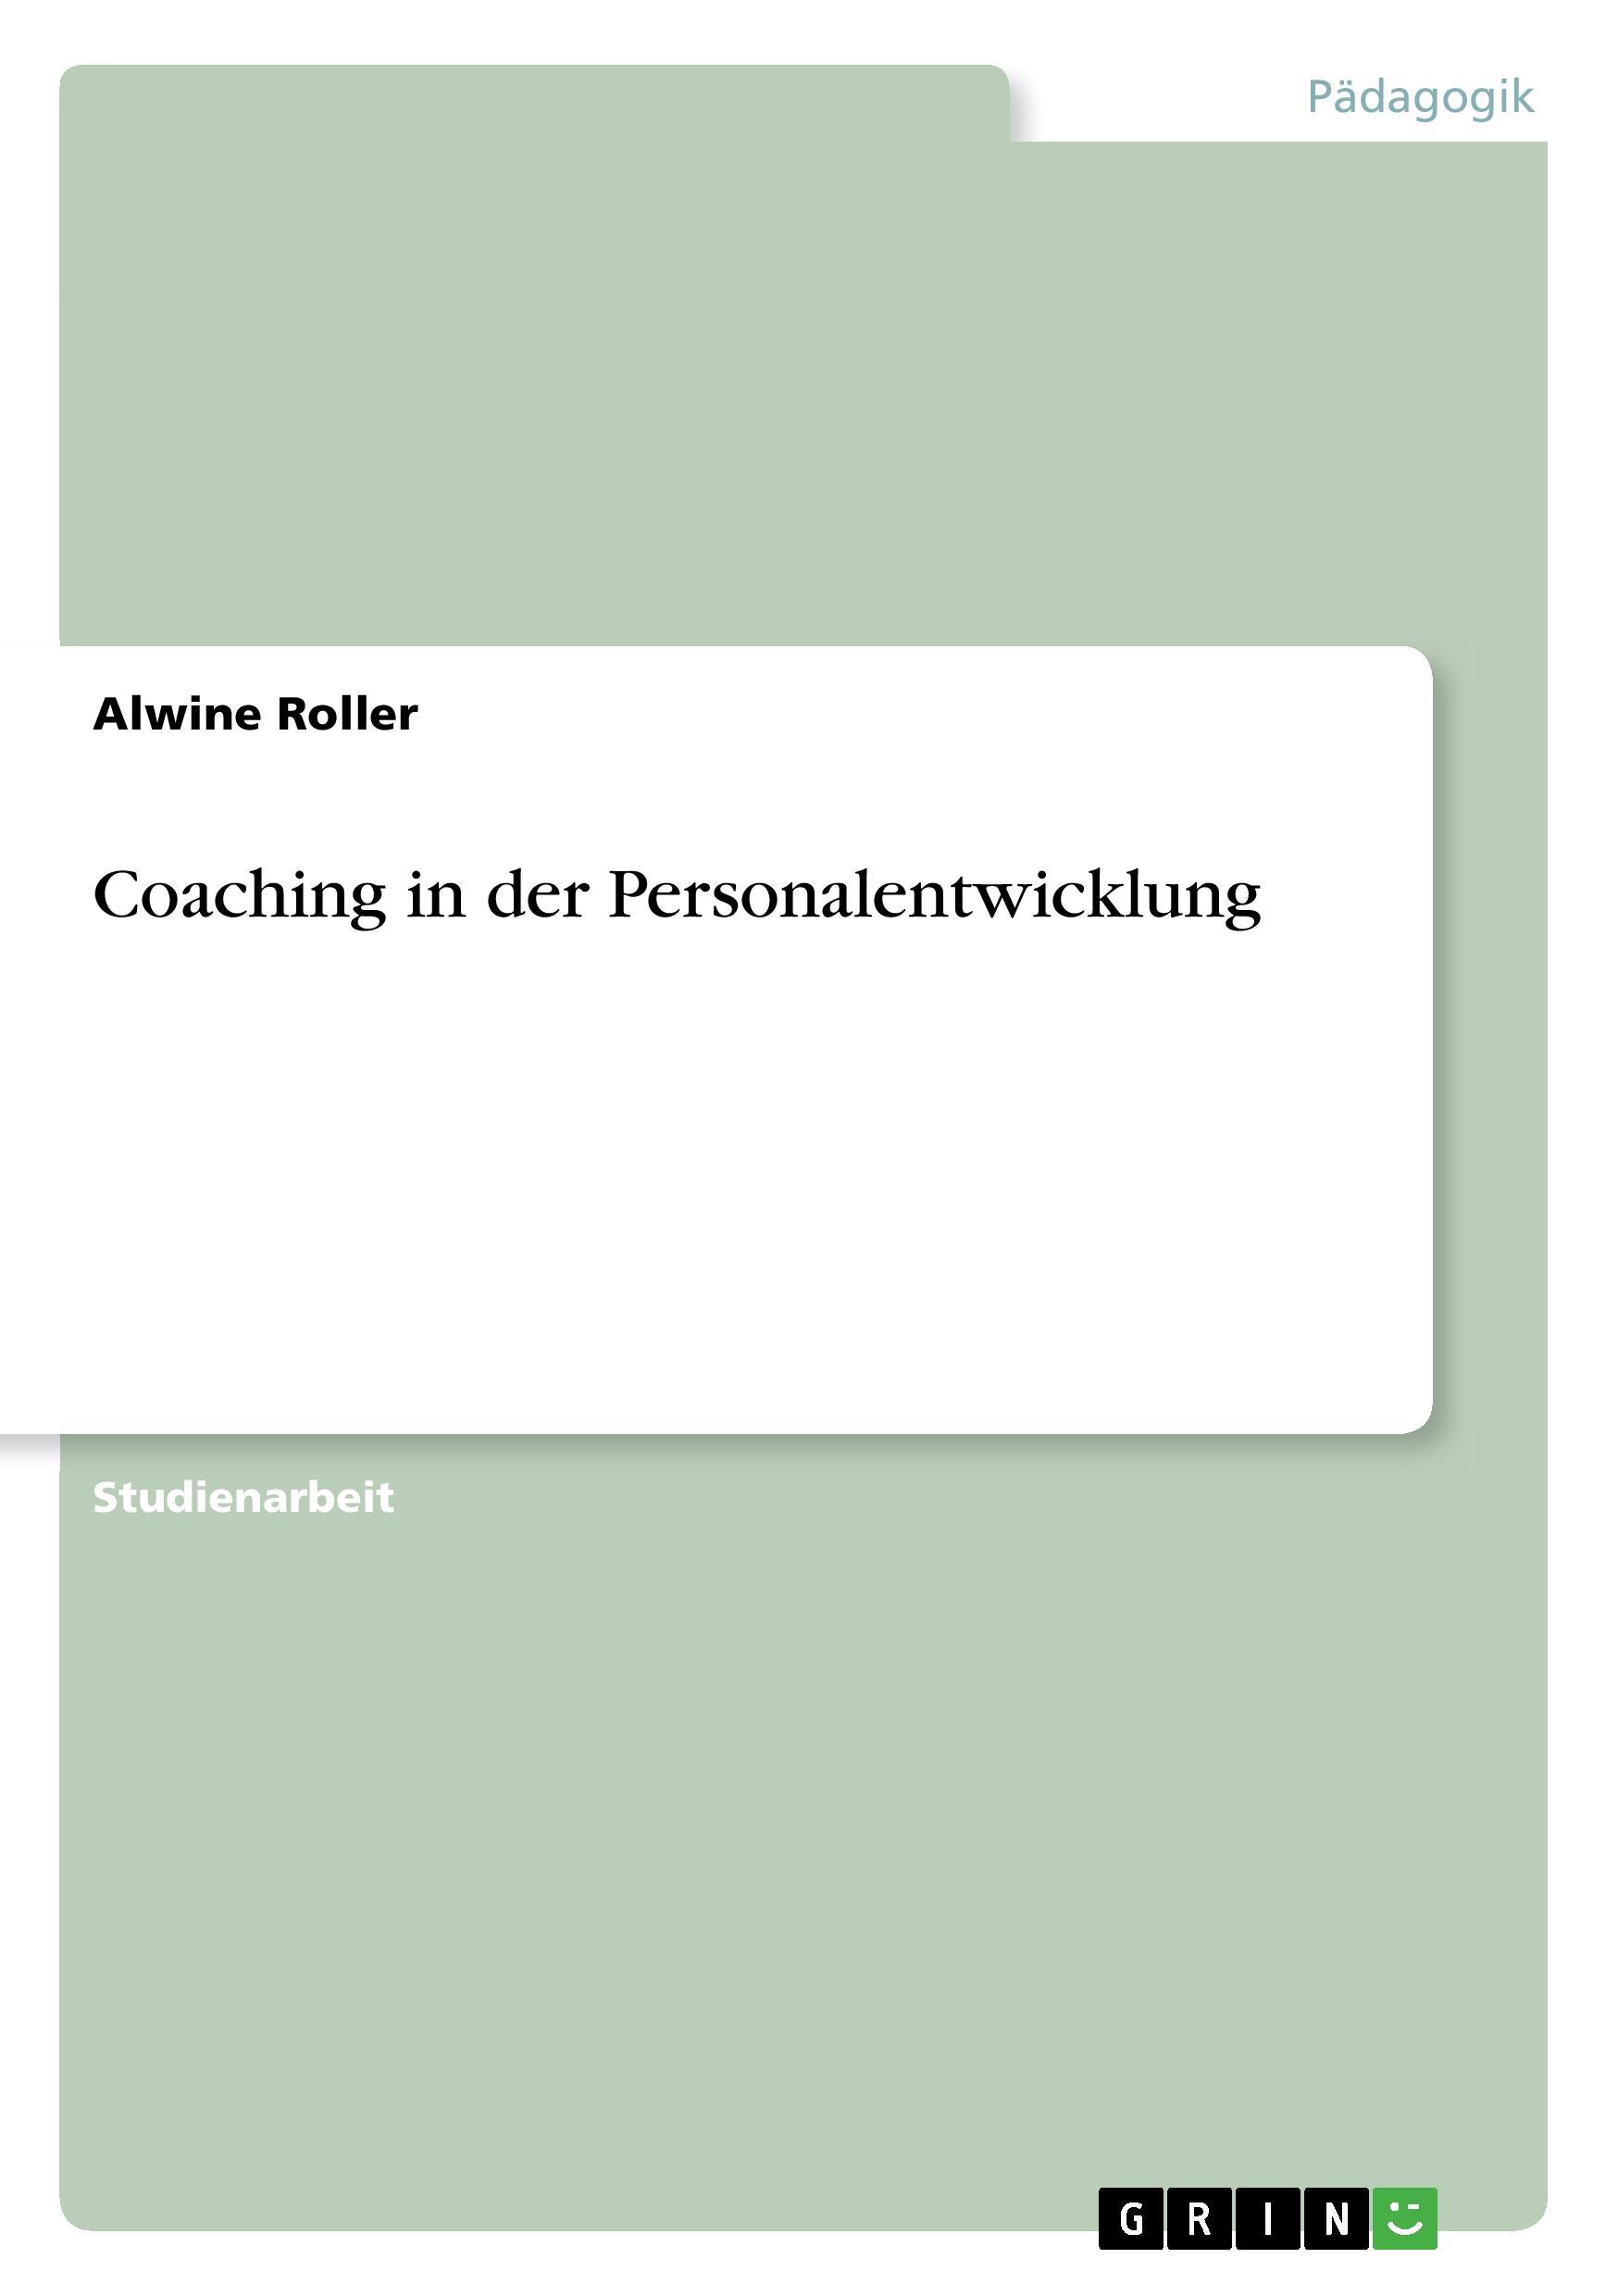 Coaching in der Personalentwicklung - Roller, Alwine